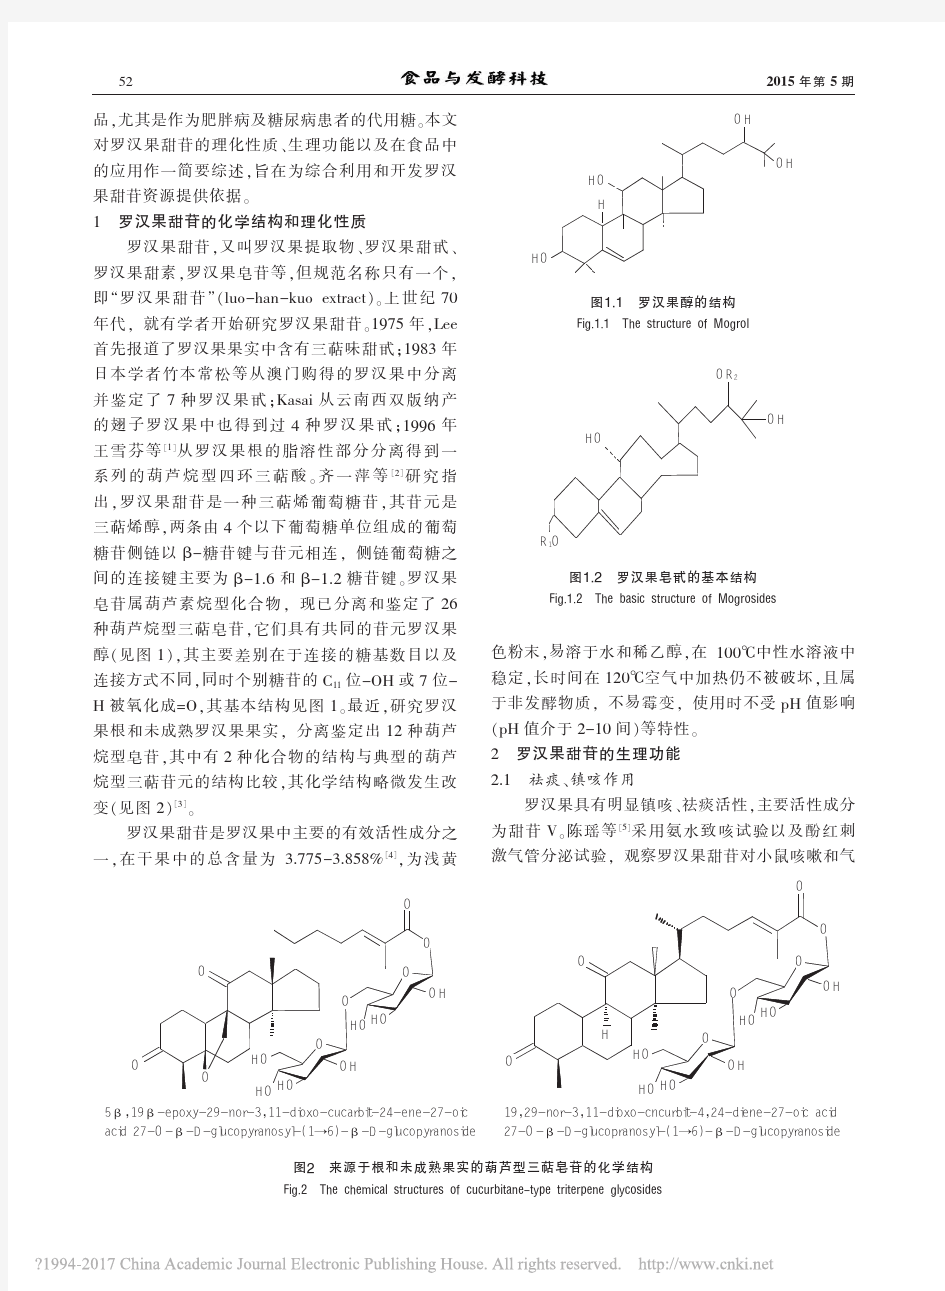 功能性甜味剂罗汉果甜苷的生理功能及食品应用研究进展_万艳娟